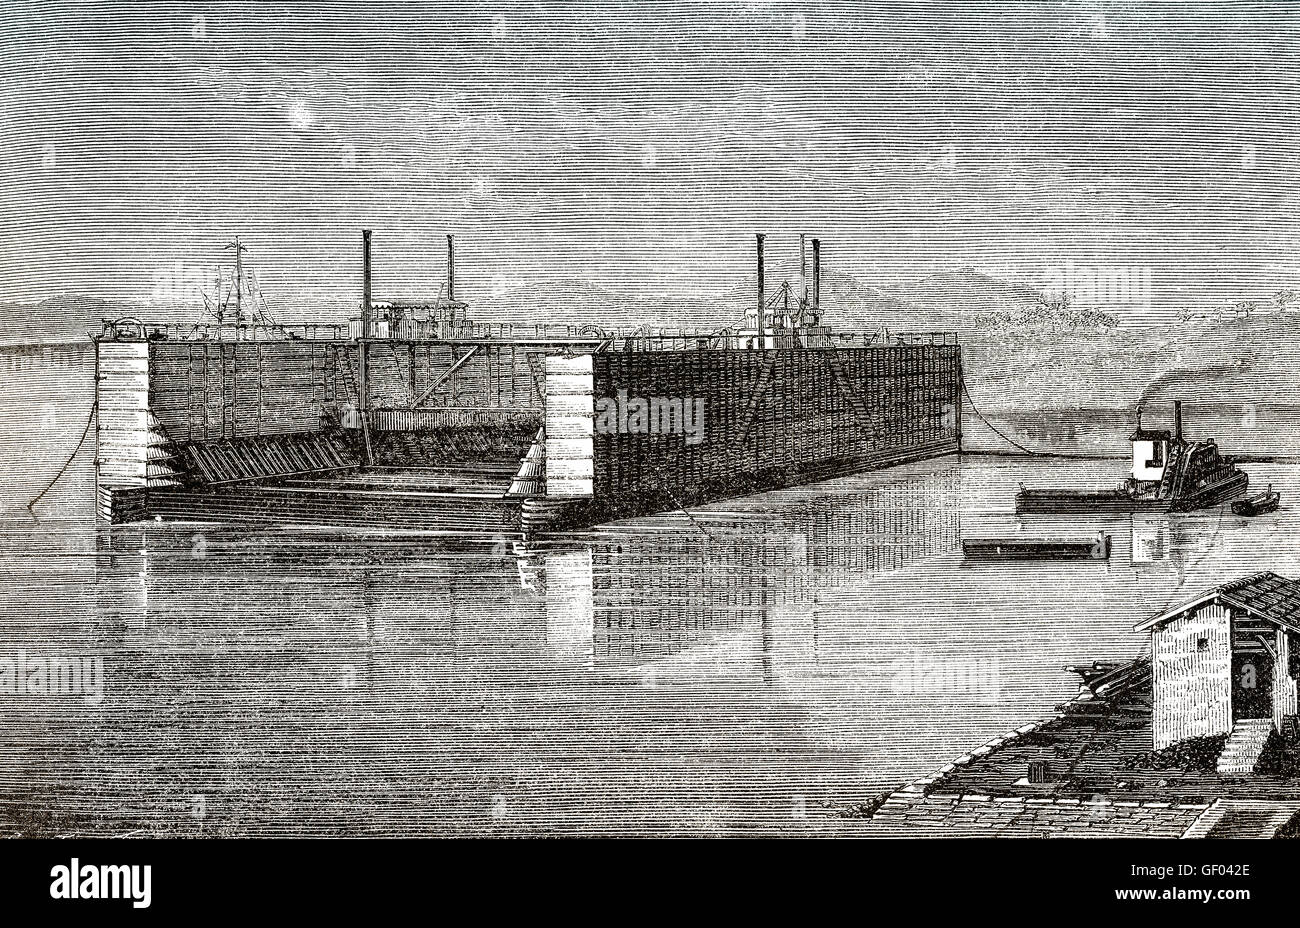 Un dique seco de instalación de reparación de buques, Suez, Egipto, del siglo XIX. Foto de stock